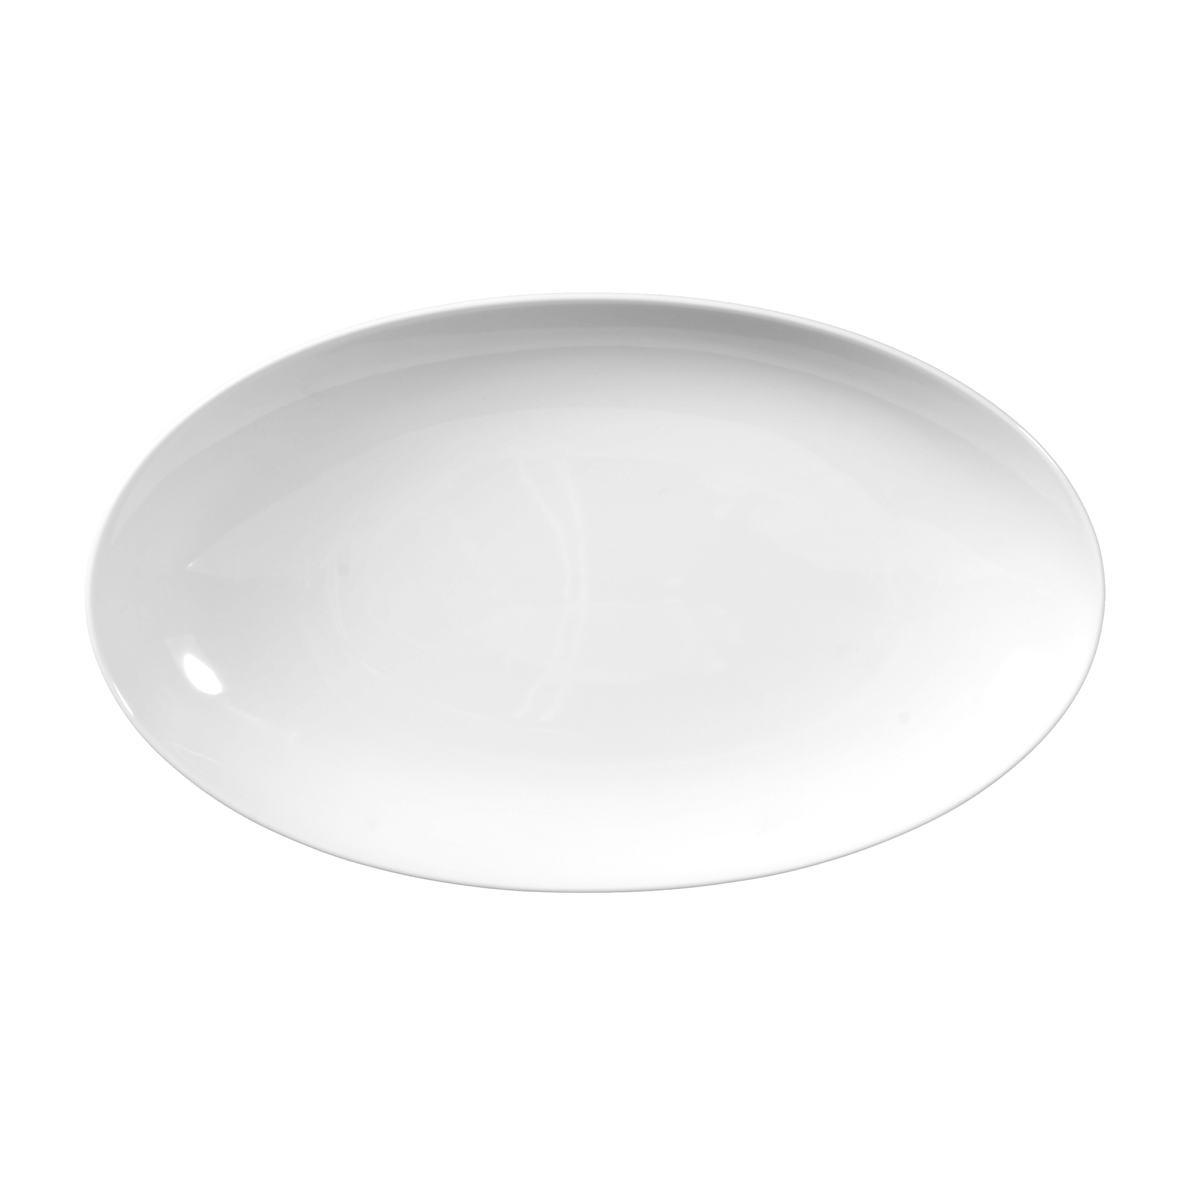 7 Rondo/Liane - Servierplatte oval Weiß